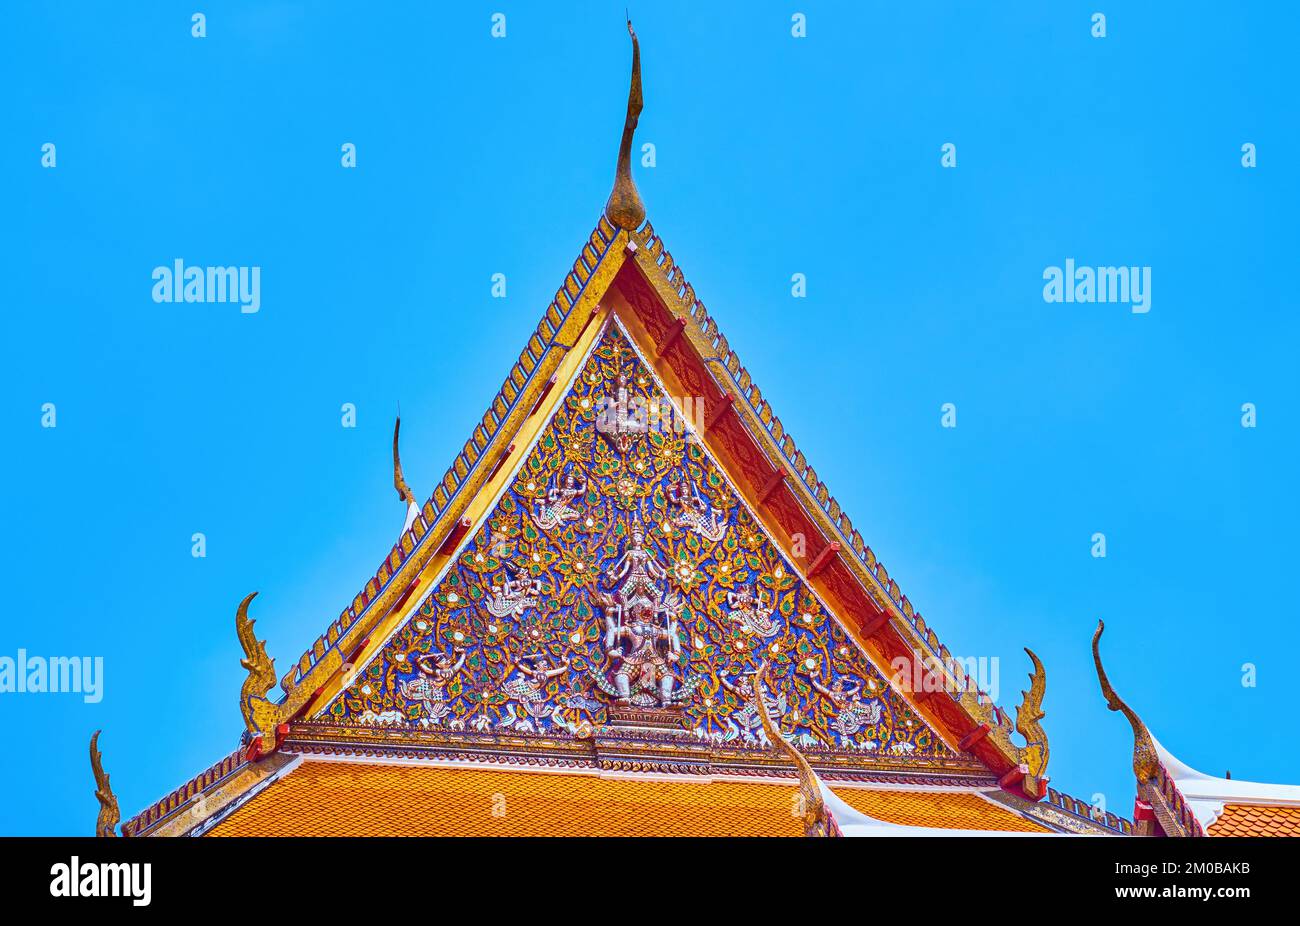 Die farbenfrohe Pediktion mit Blumenmustern und myphologischen Kreaturen des Schreins im Tempel Wat Mahathat in Bangkok, Thailand Stockfoto